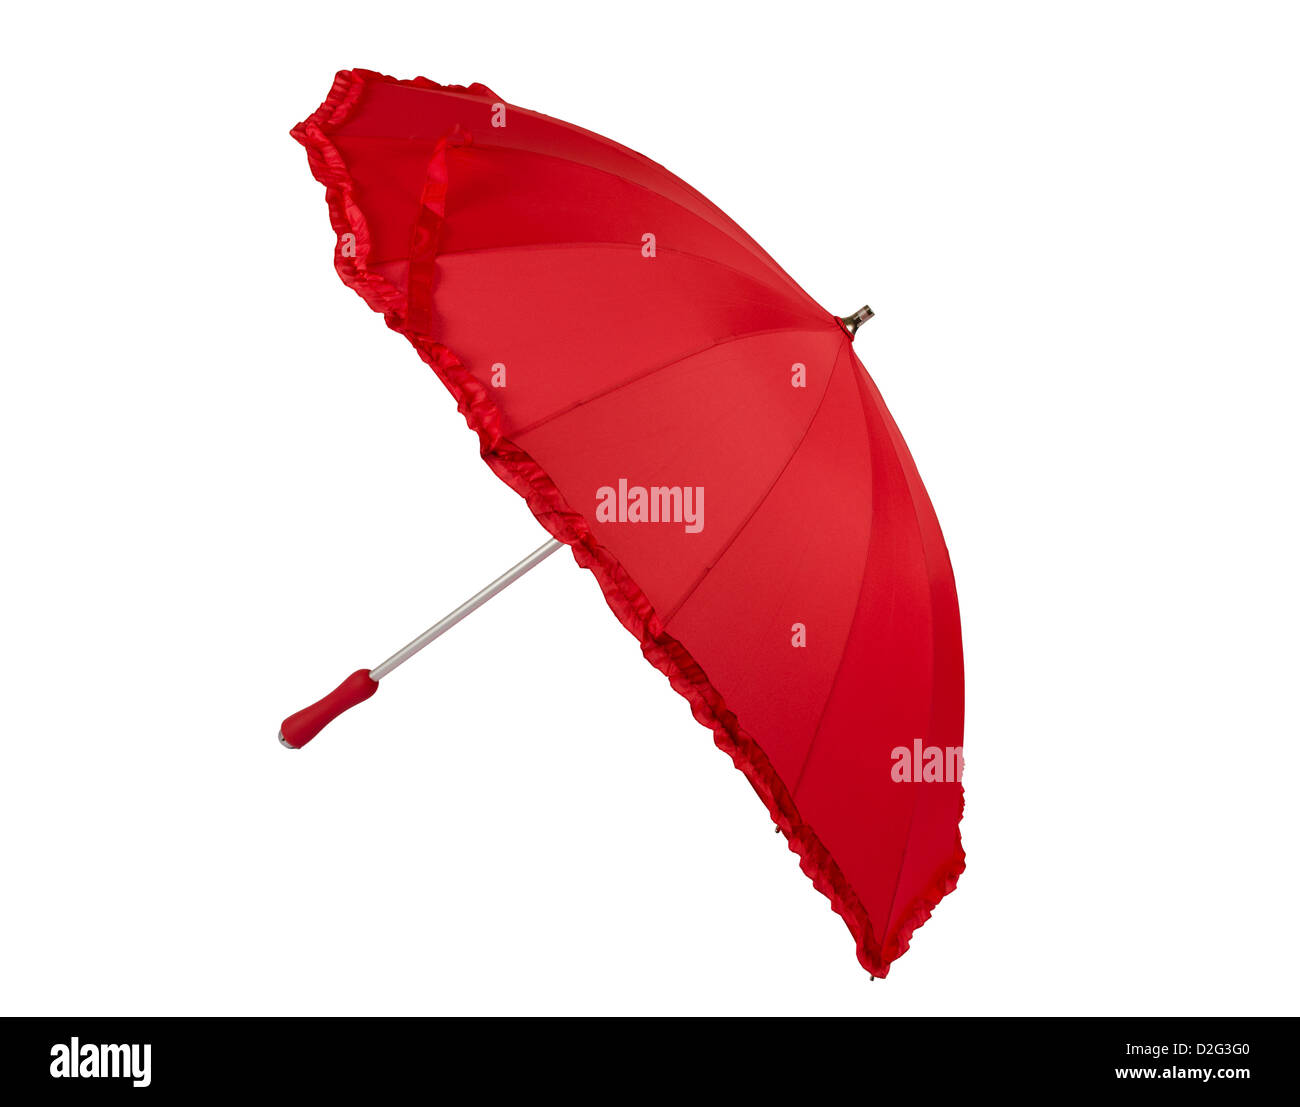 Parapluie en forme de coeur isolé sur fond blanc Banque D'Images